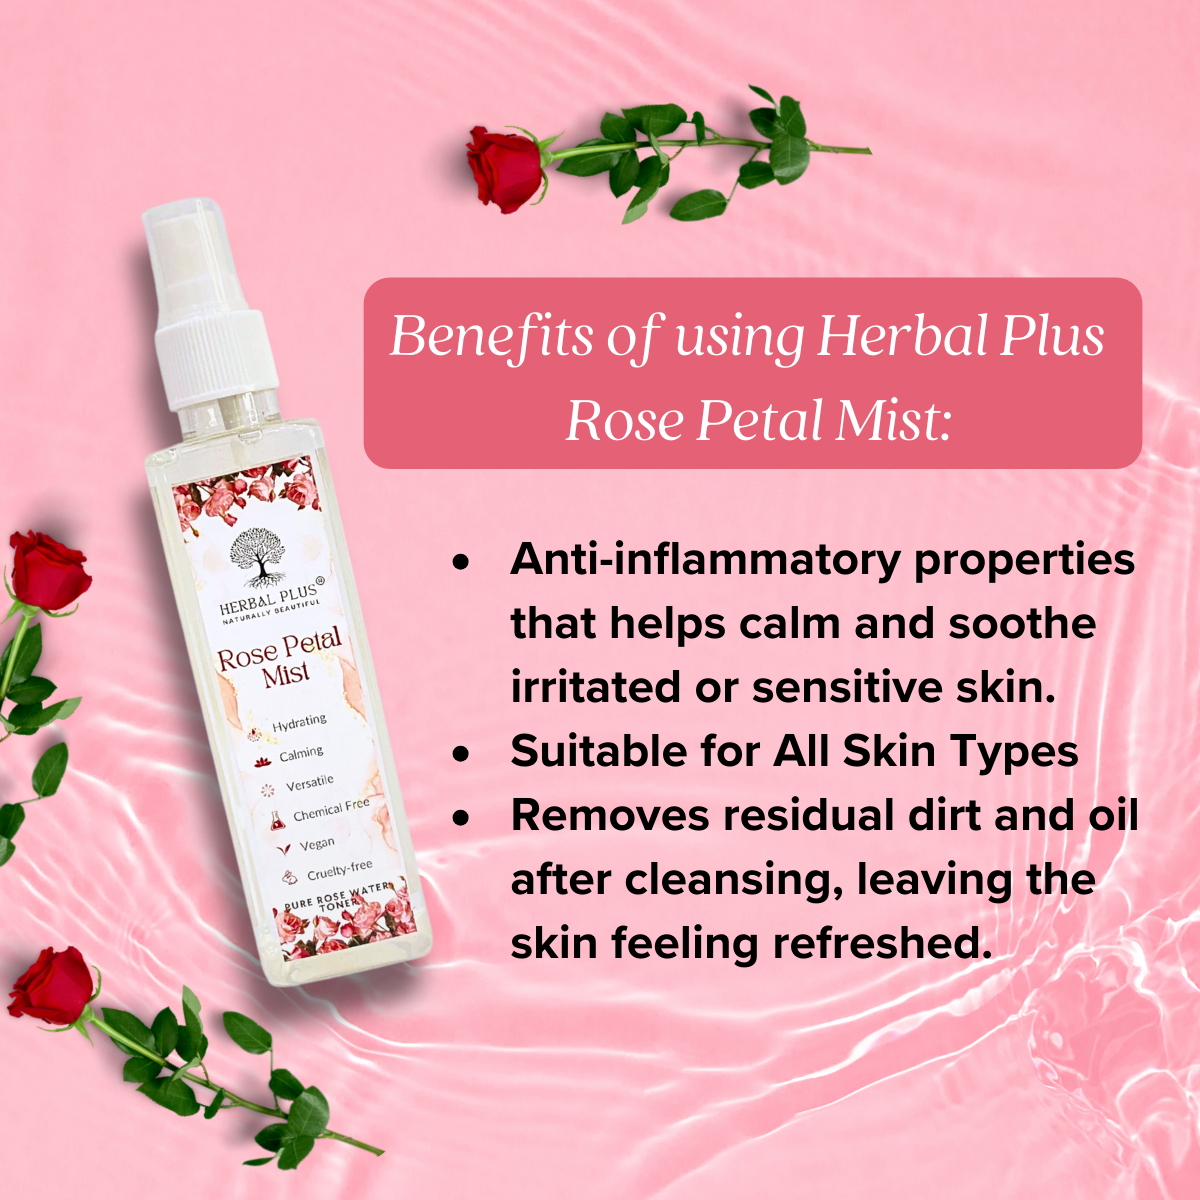 Herbal Plus Rose Petal Mist